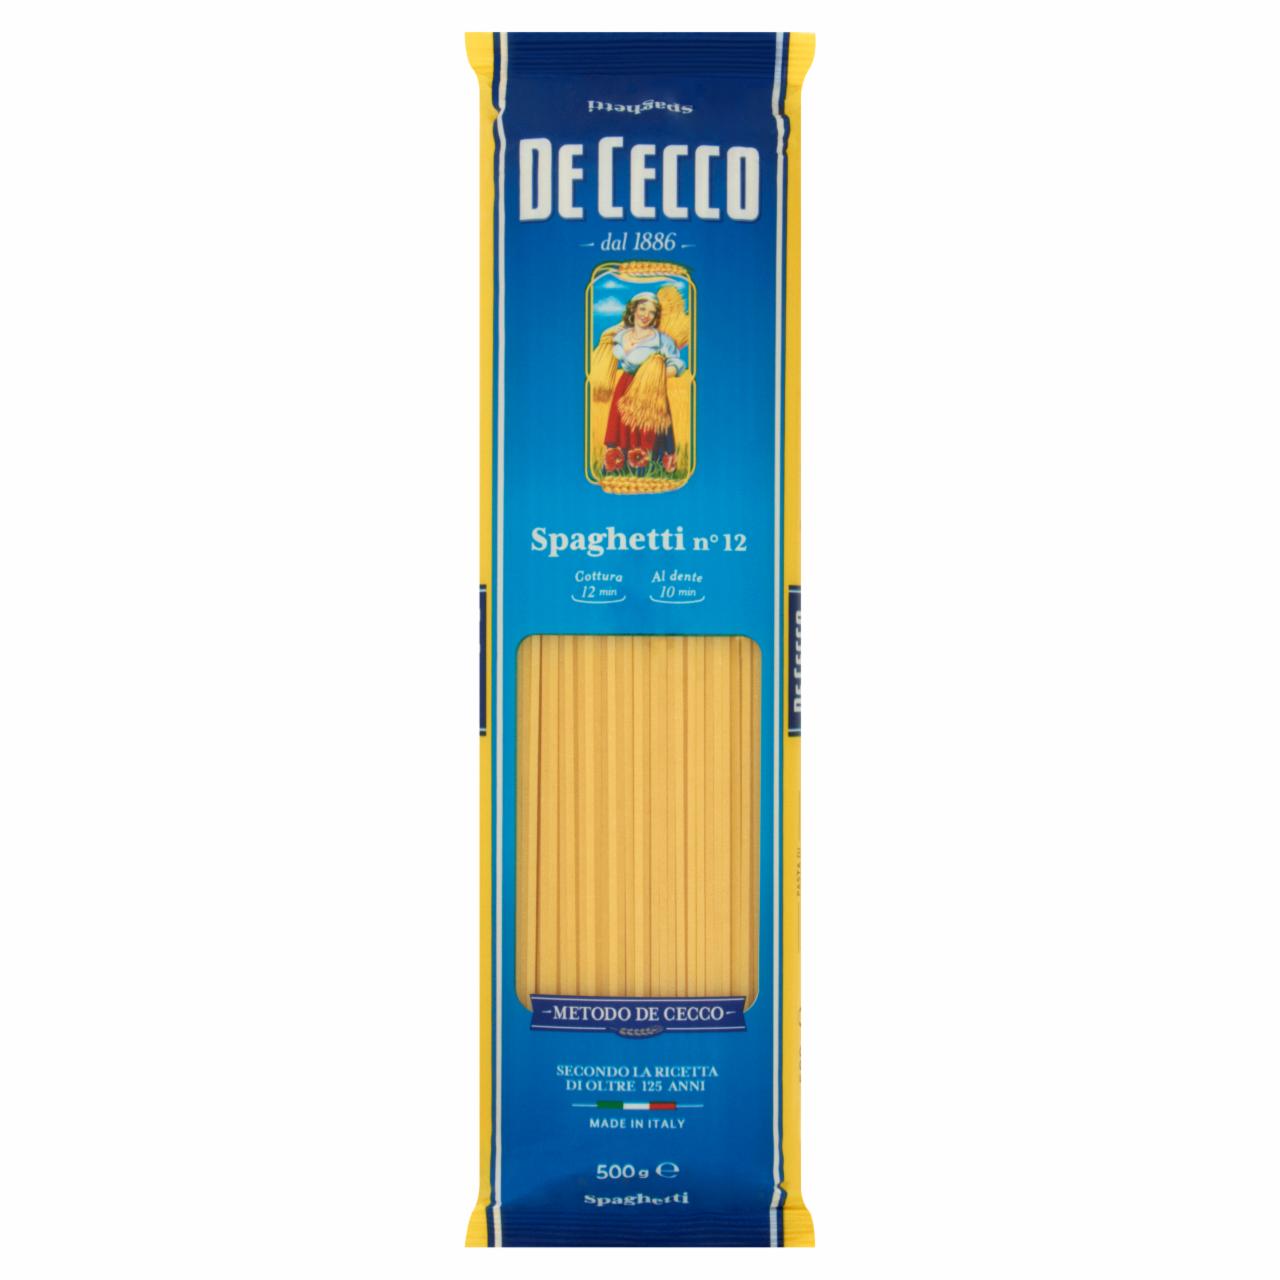 Photo - De Cecco Spaghetti No 12 Wheat Pasta 500 g